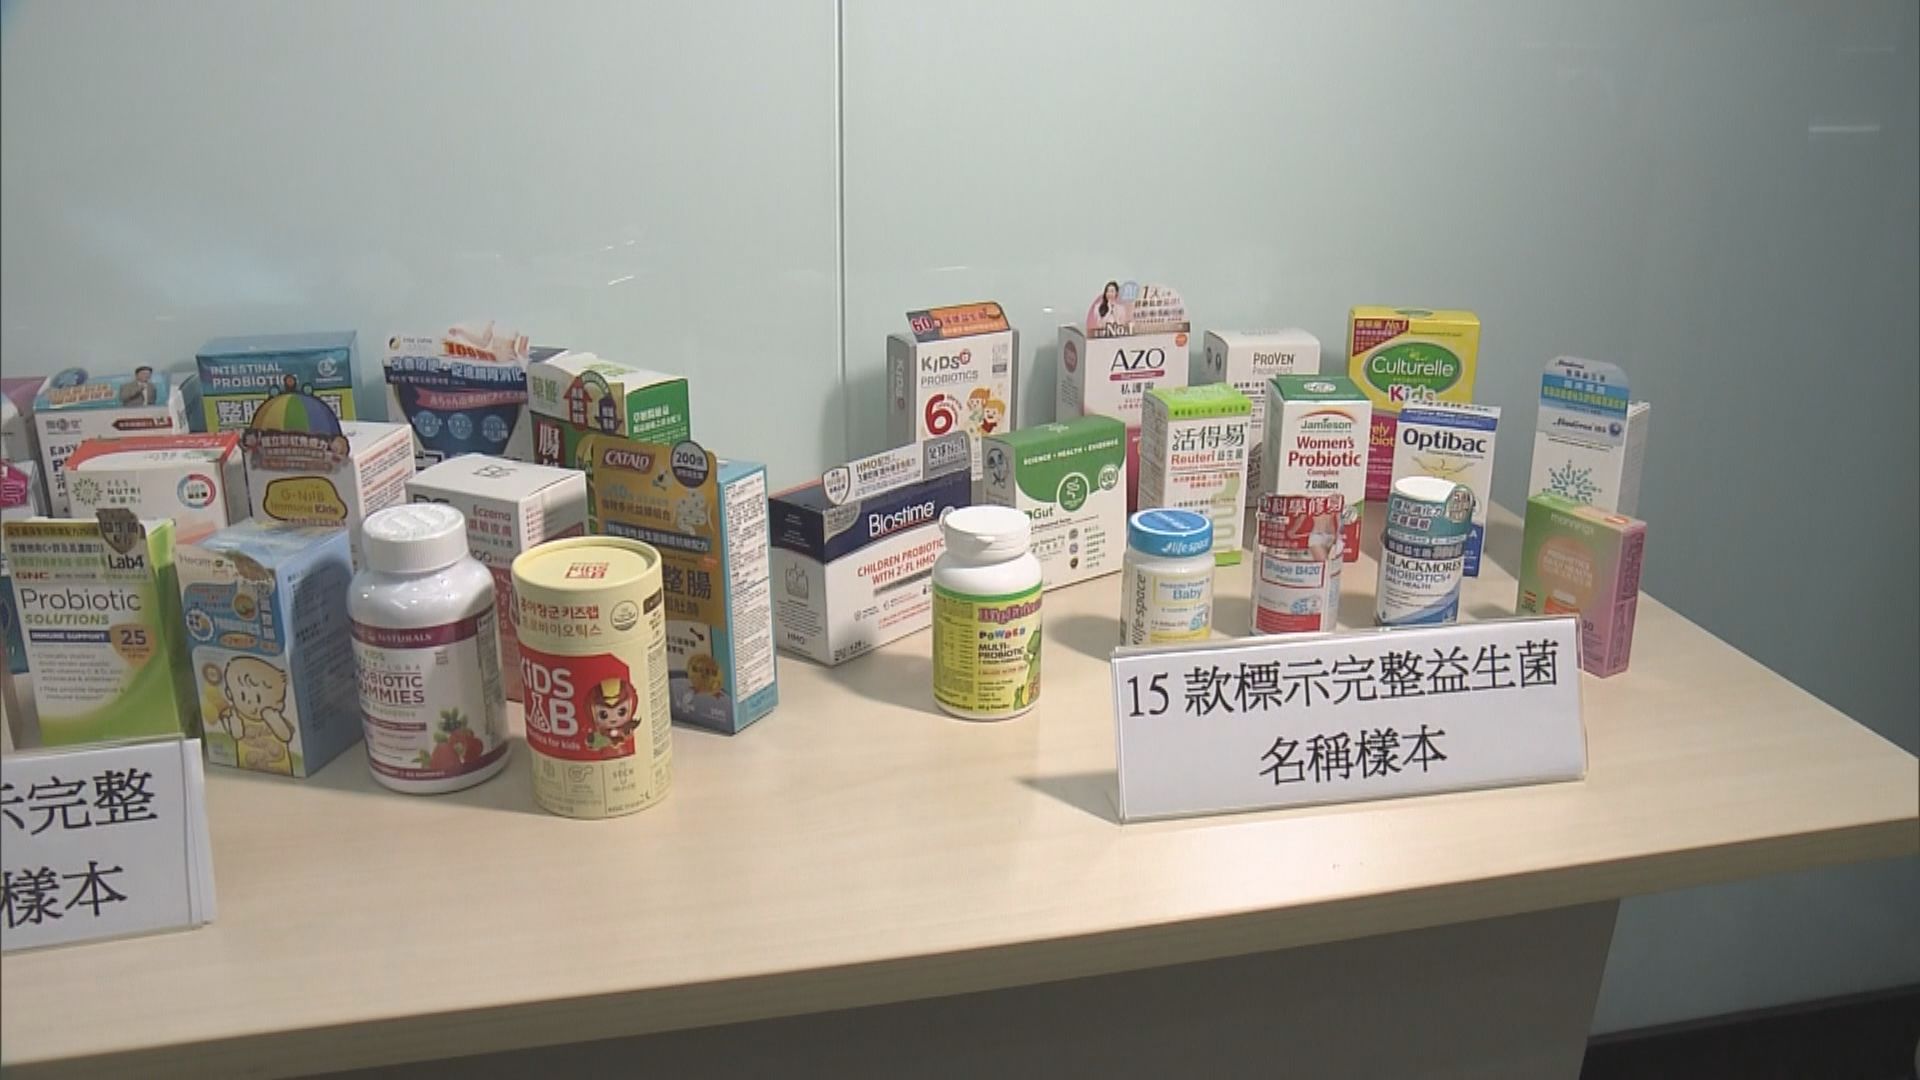 一款日本益生菌產品聲稱適合兒童食用 消委會揭含世衛不建議人類使用菌株 